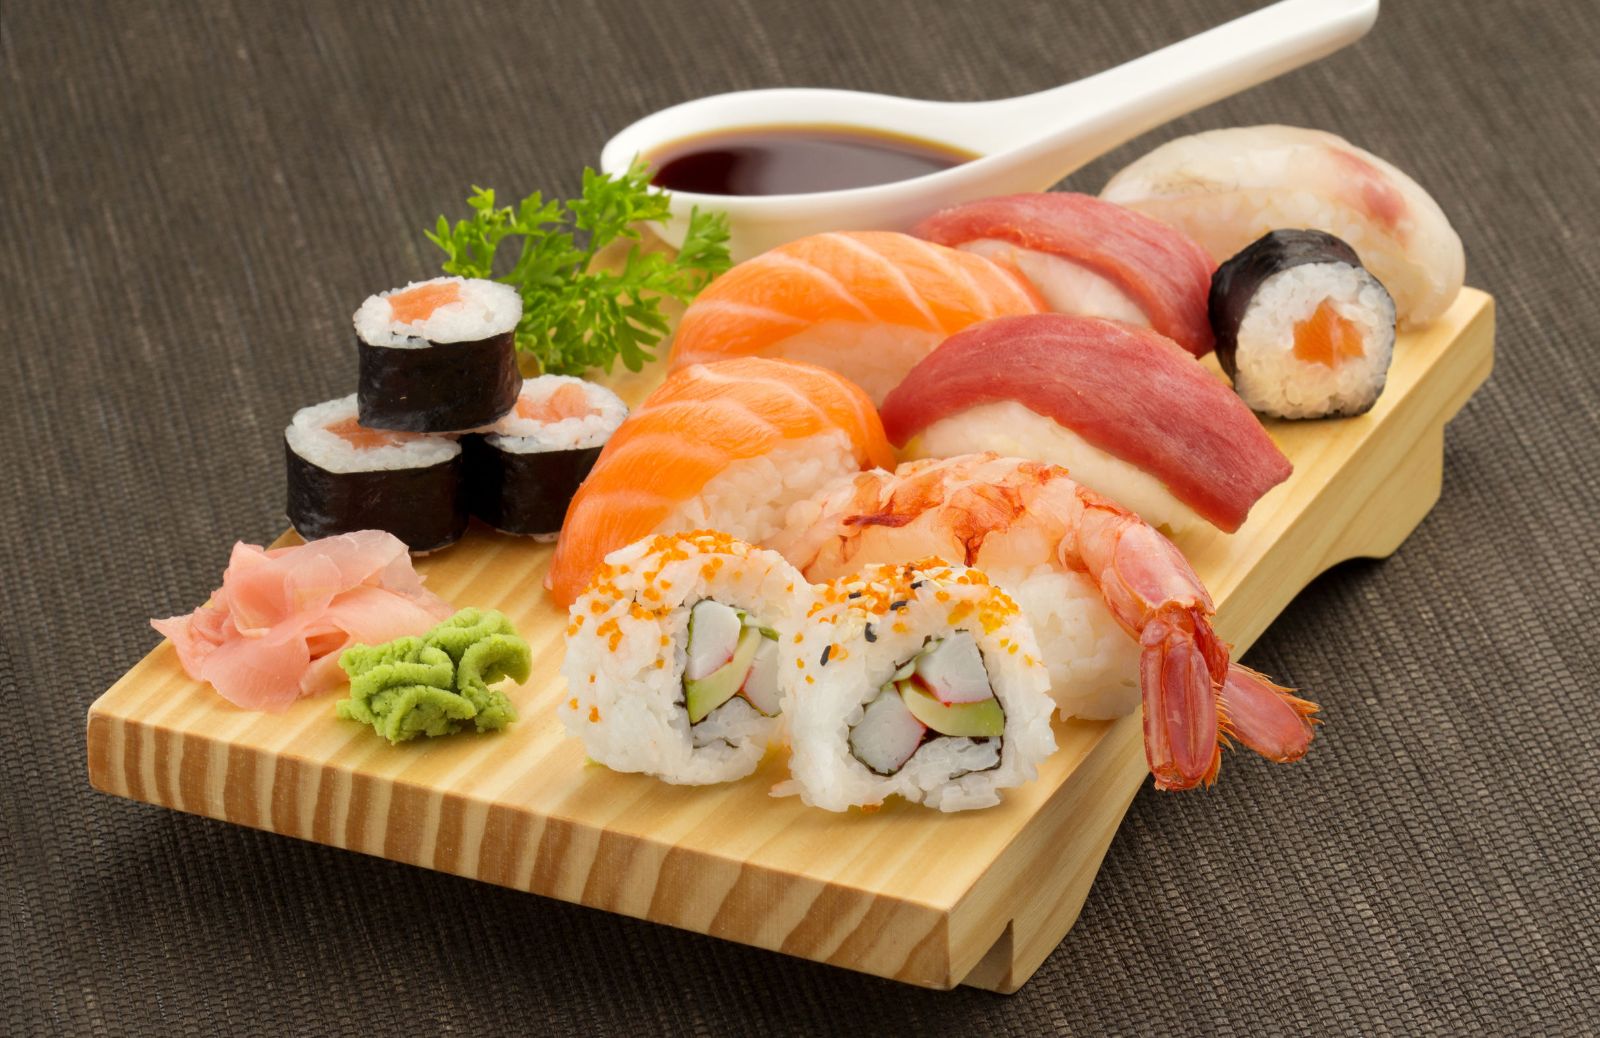 Quante calorie ha il sushi?